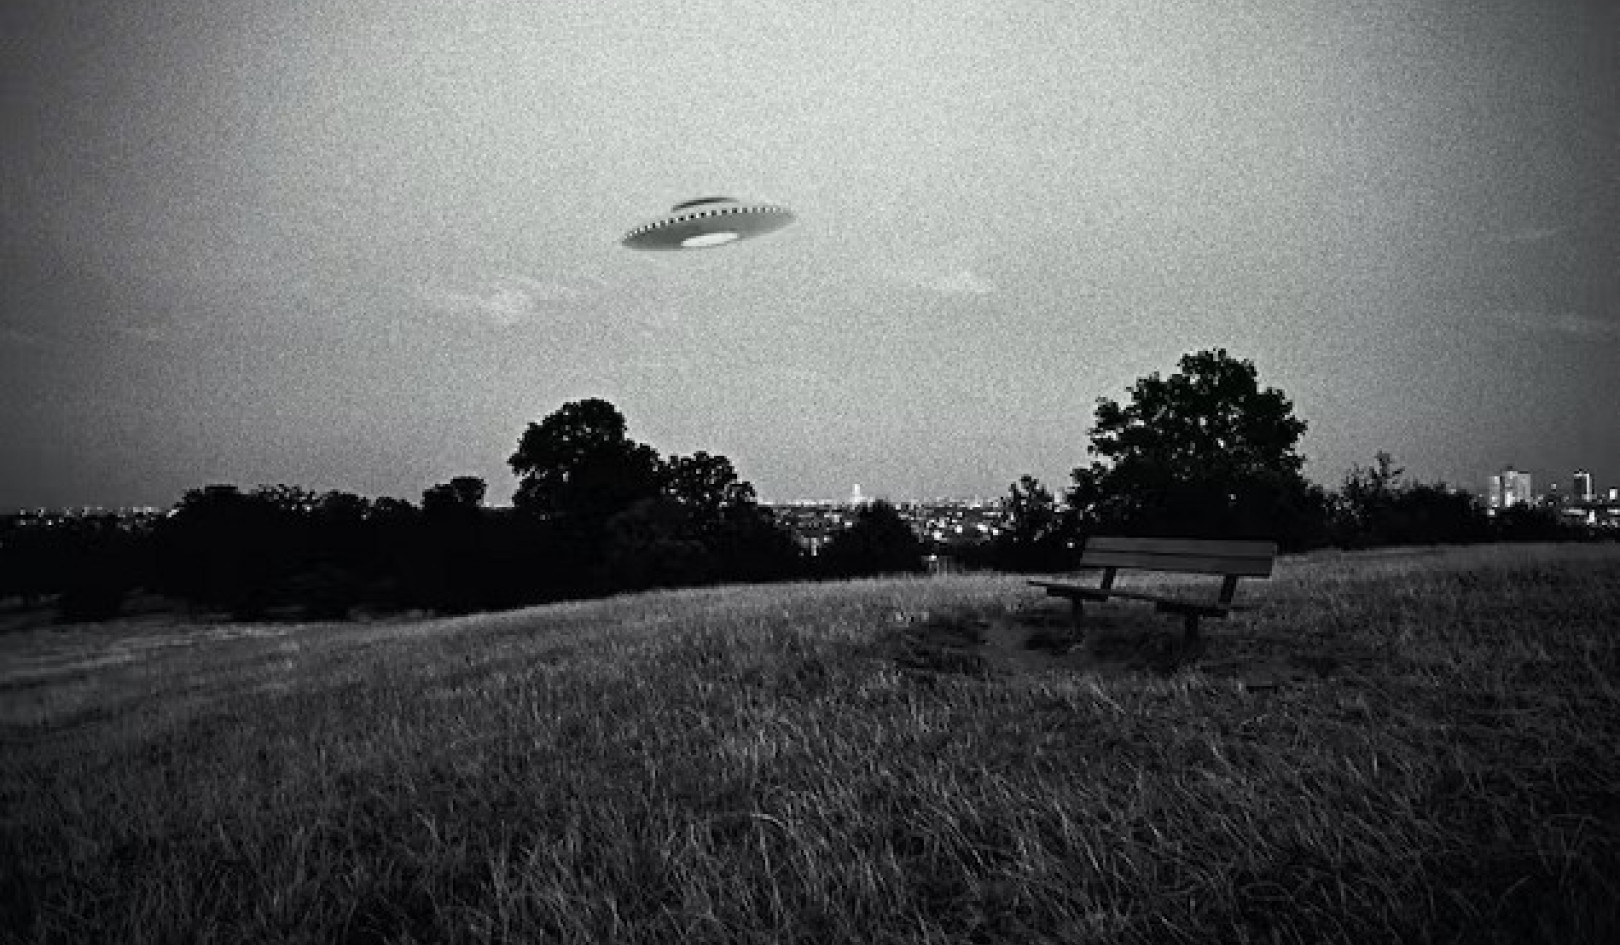 Warum Menschen dazu neigen, UFOs für außerirdische Wesen zu halten